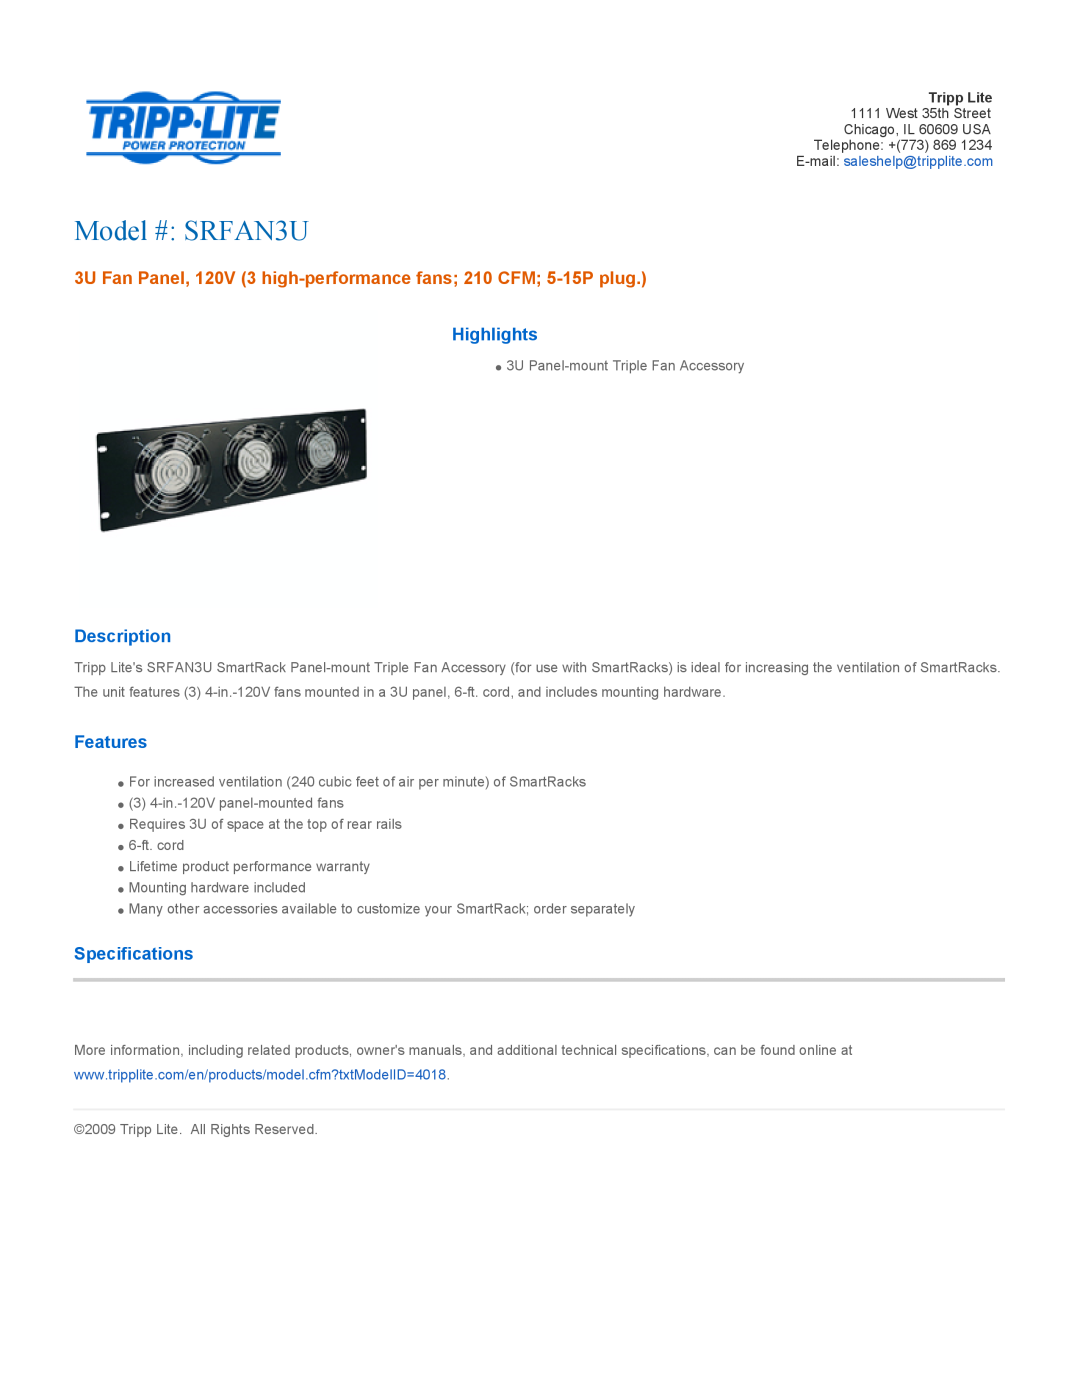 Tripp Lite warranty Model # SRFAN3U, Highlights, Description, Features, Specifications 